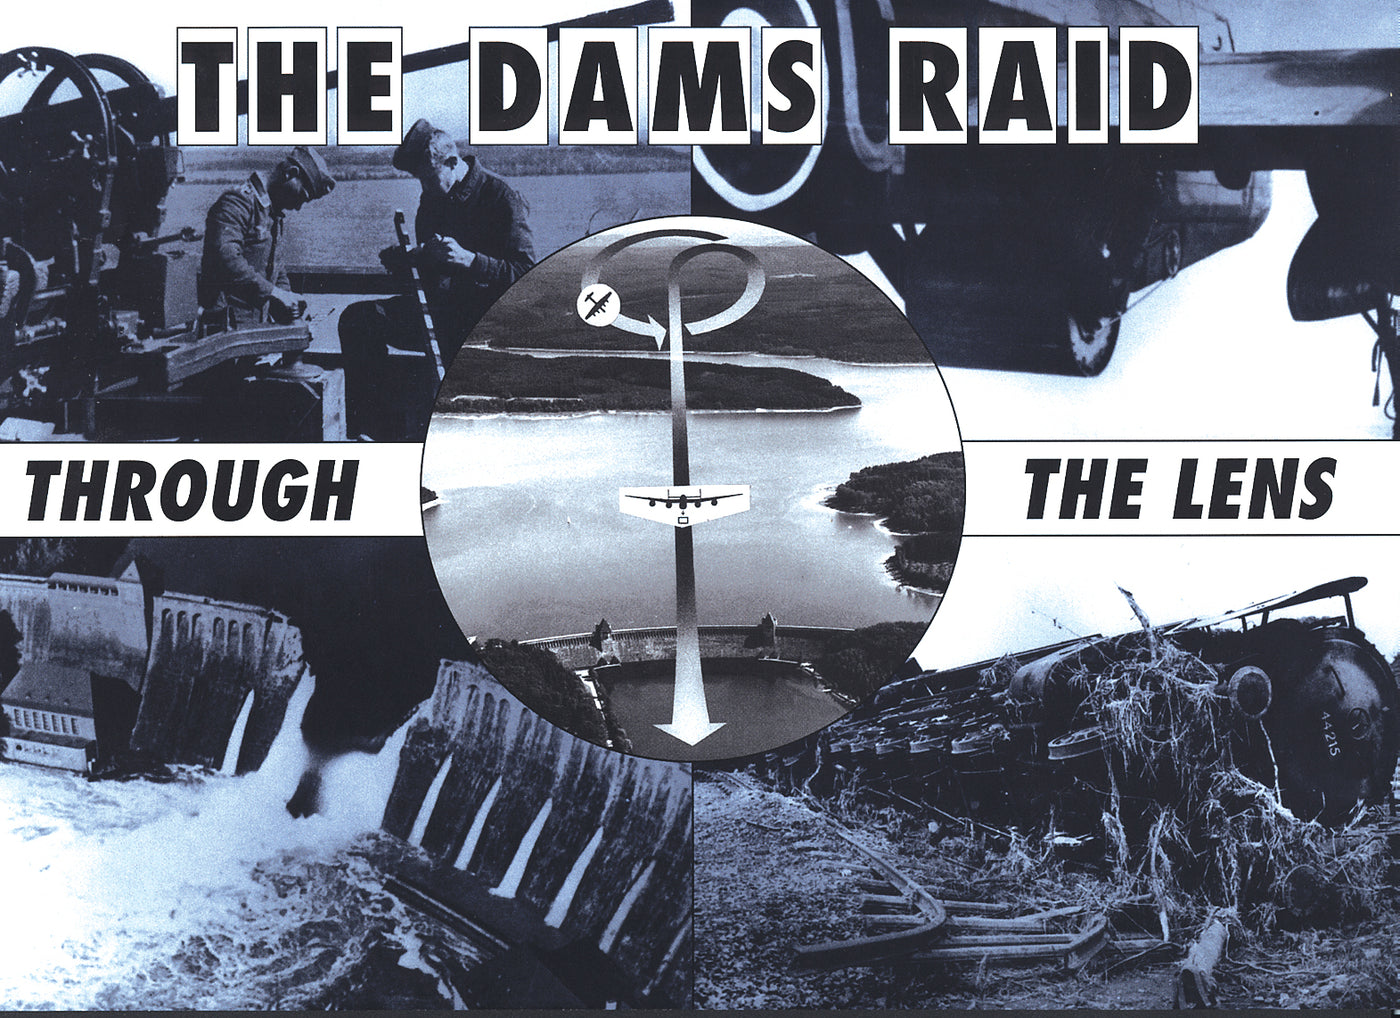 THE DAMS RAID - Through The Lens